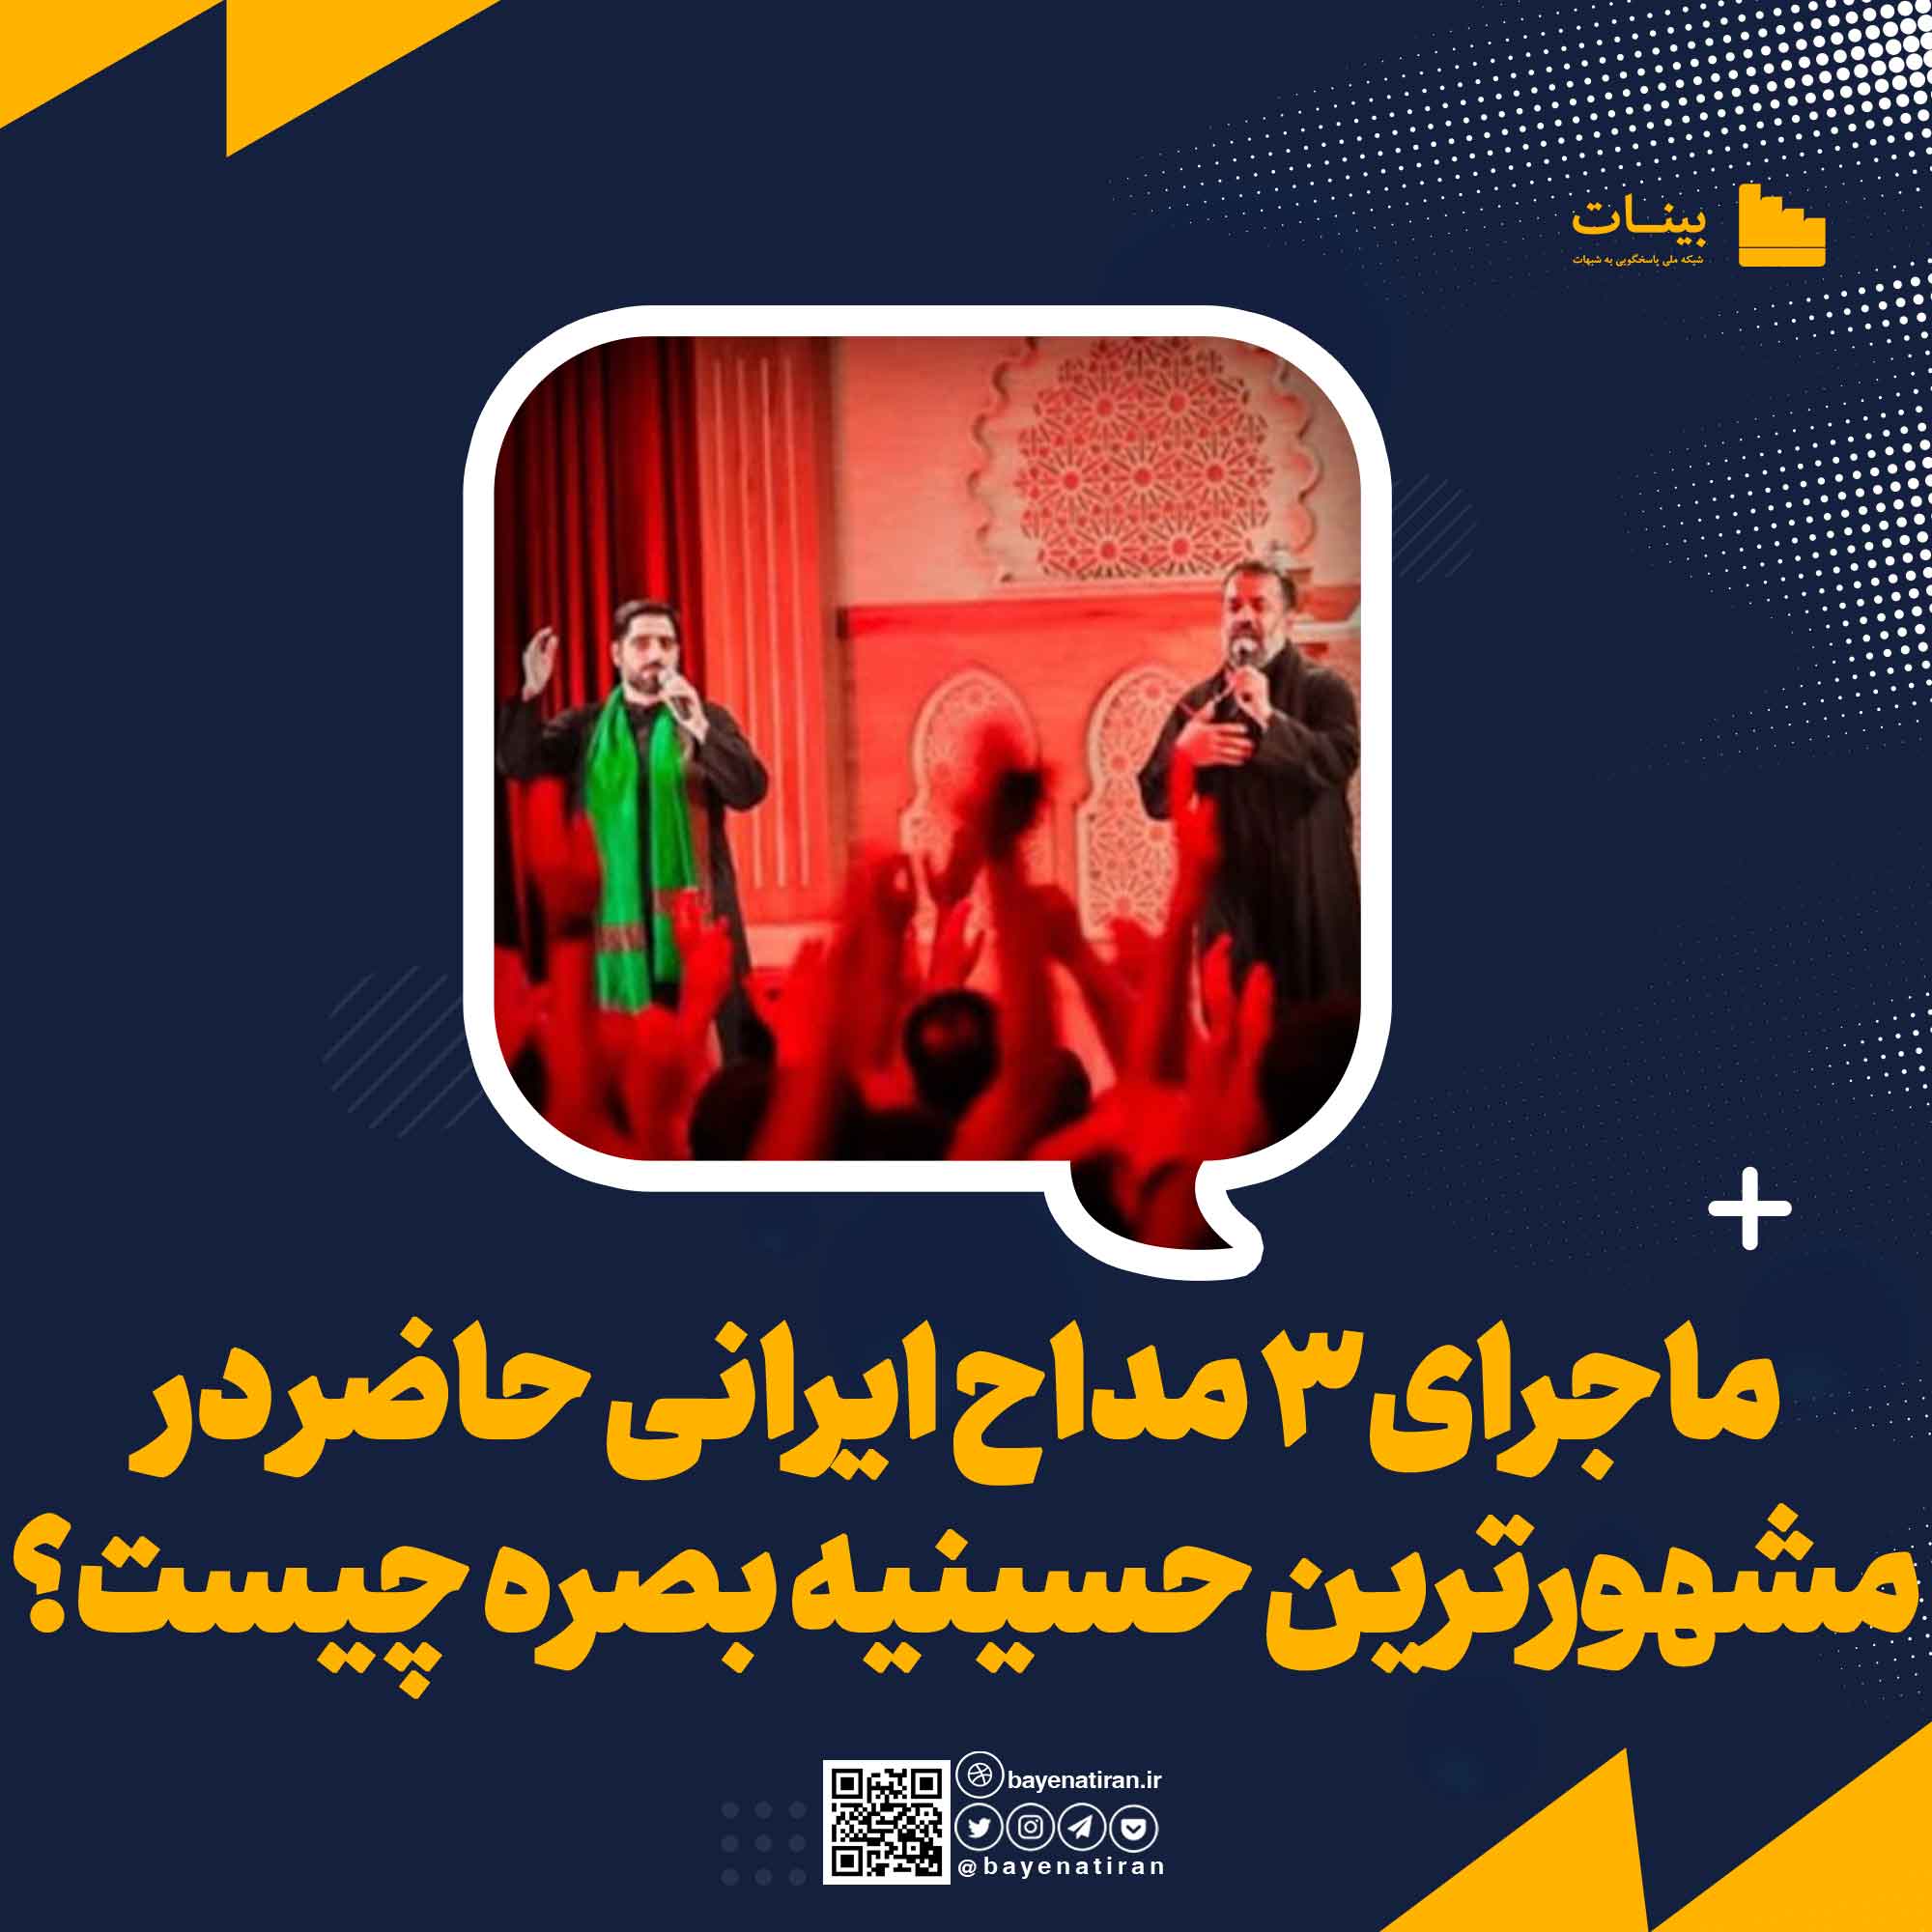 علت-حمله-رسانه-ای-به-3-مداح-ایرانی-حاضر-در-مشهورترین-حسینیه-بصره-چیست